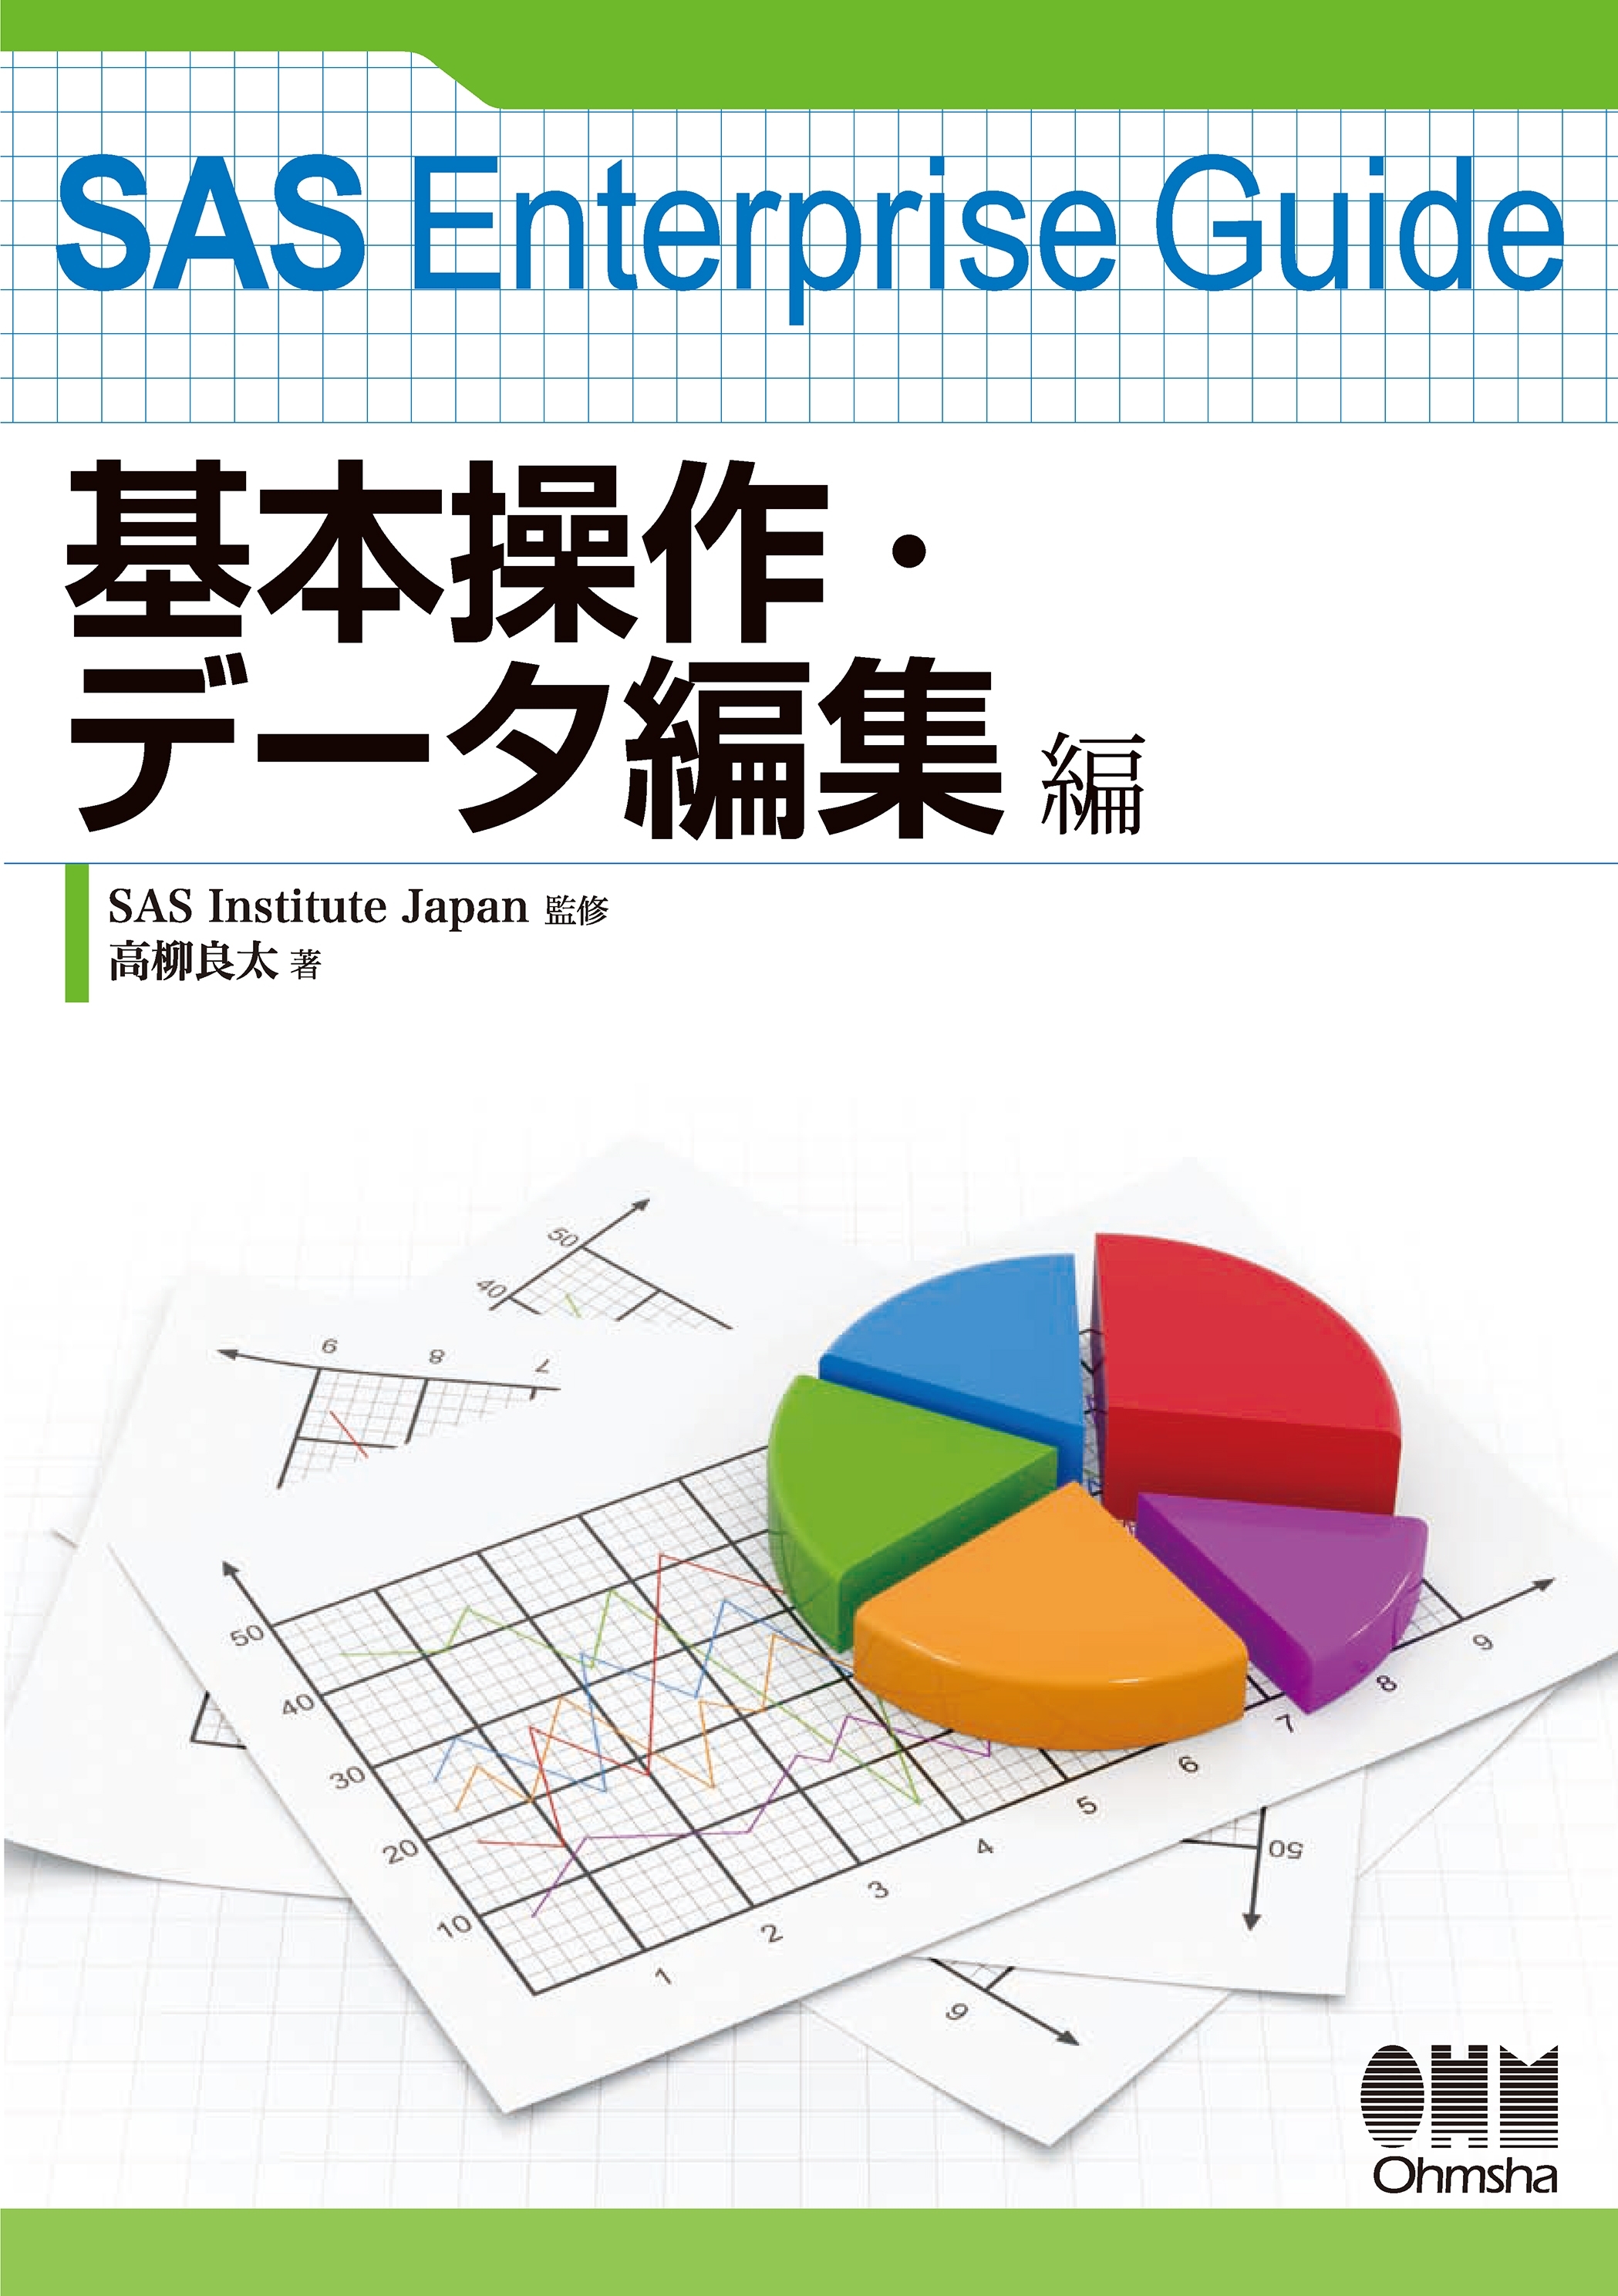 SAS Enterprise Guide 基本操作・データ編集編1巻(最新刊)|SAS Institute Japan